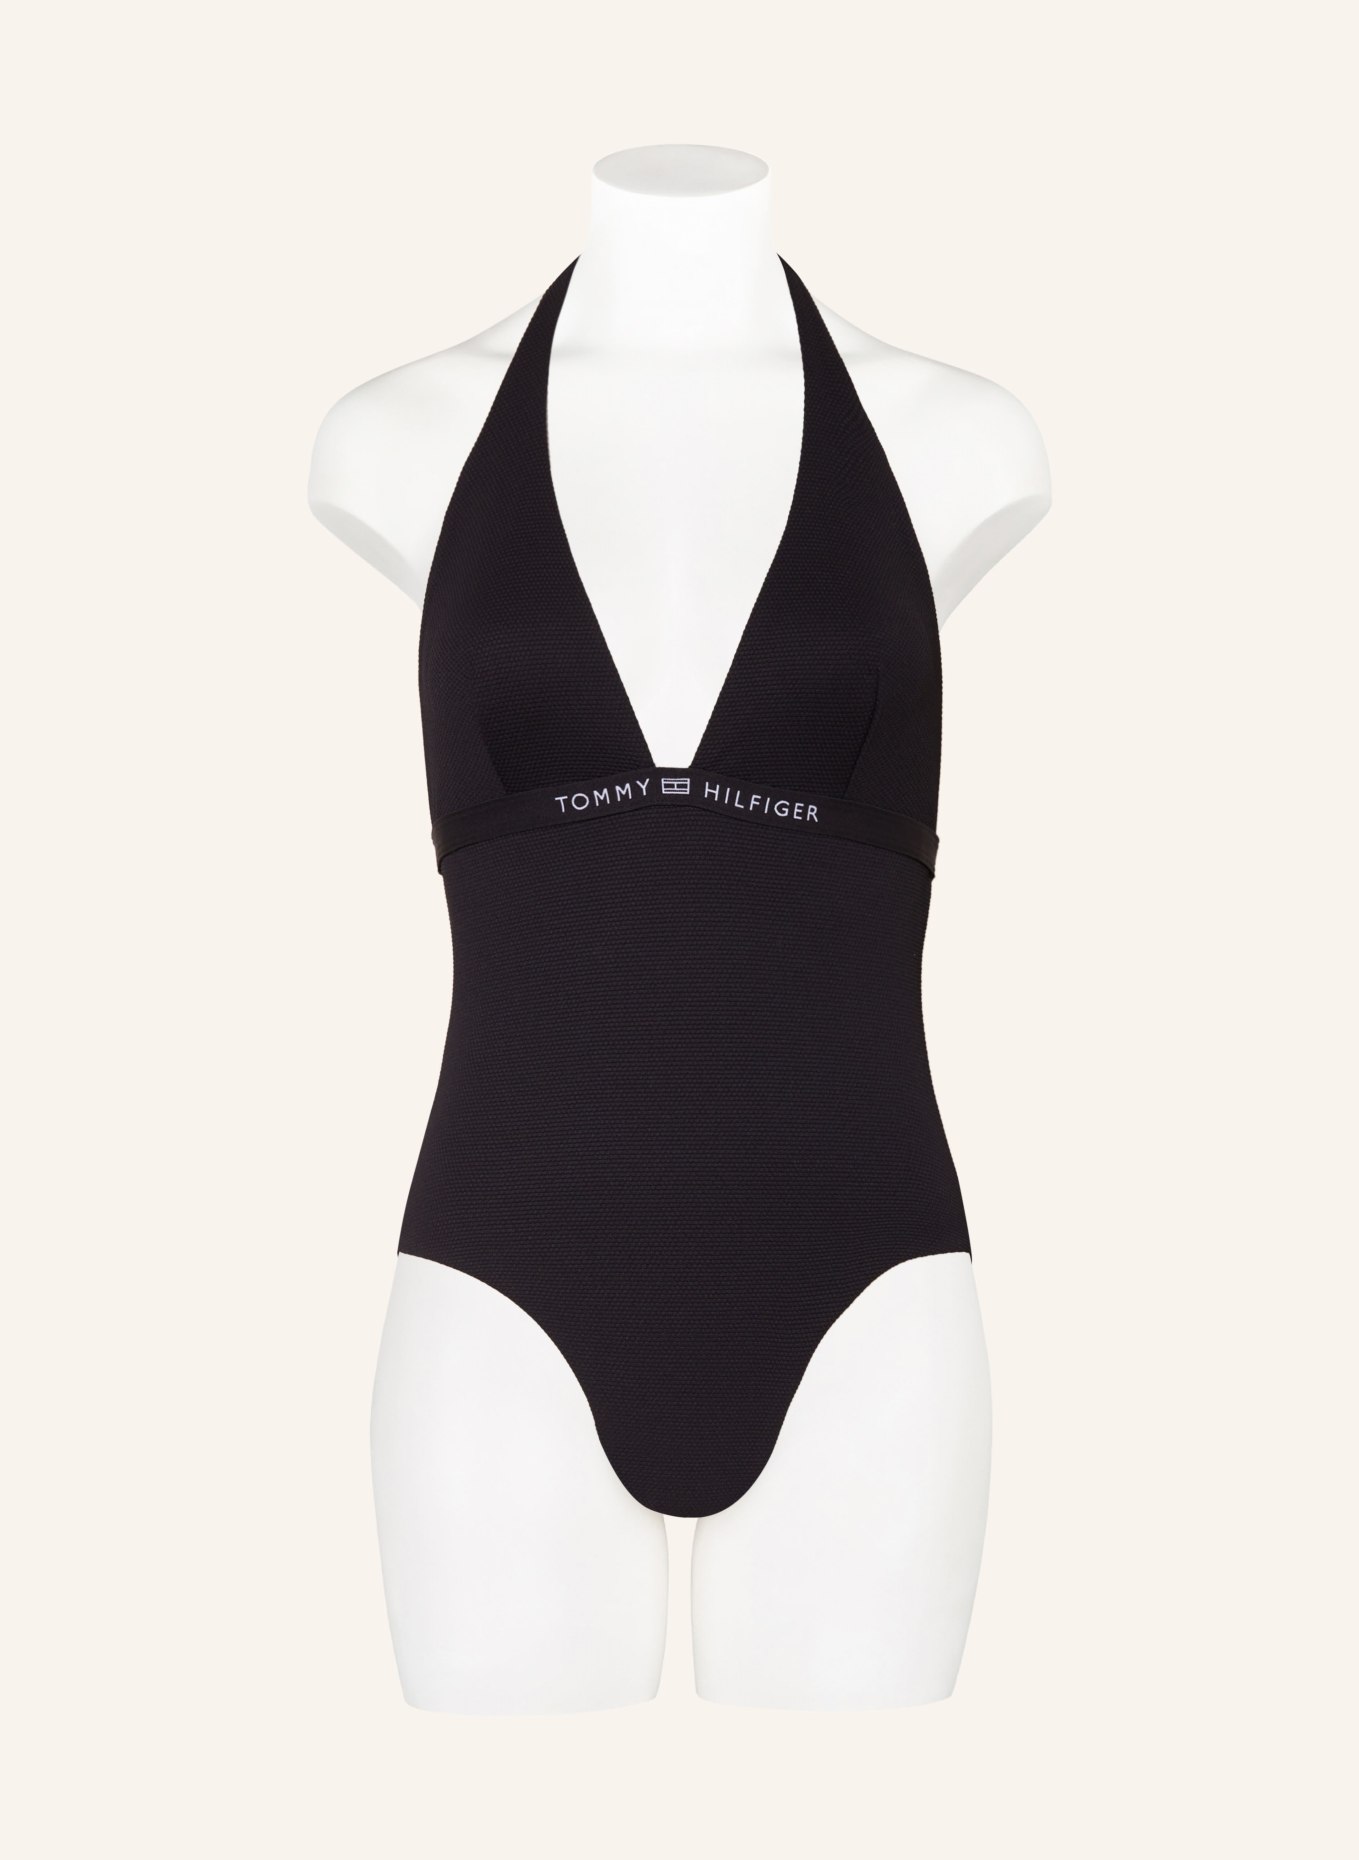 TOMMY HILFIGER Halter neck swimsuit, Color: BLACK (Image 2)